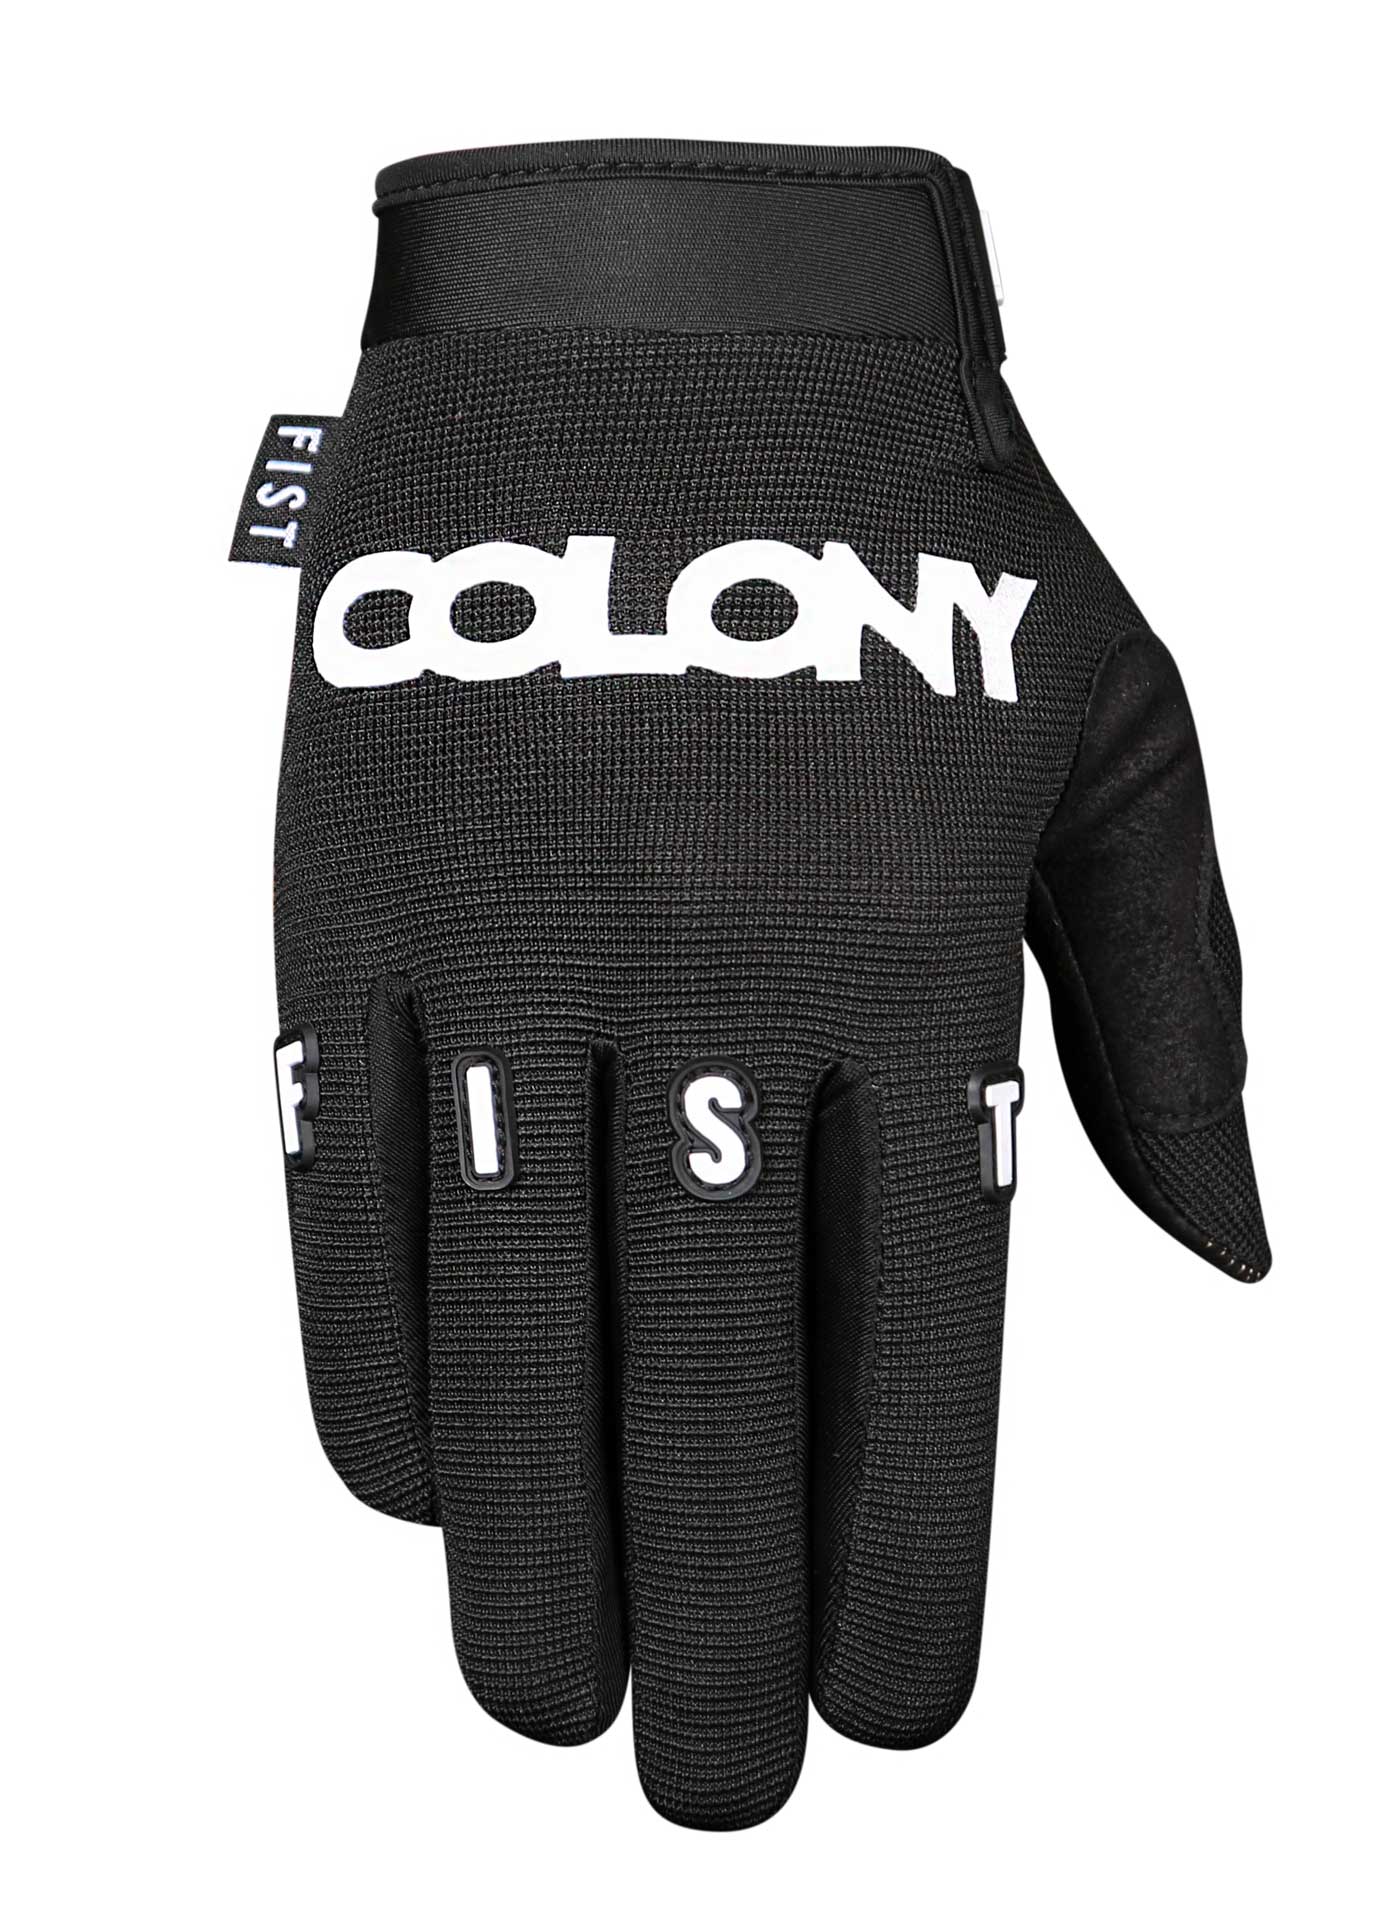 Colony x FIST Corpo Glove